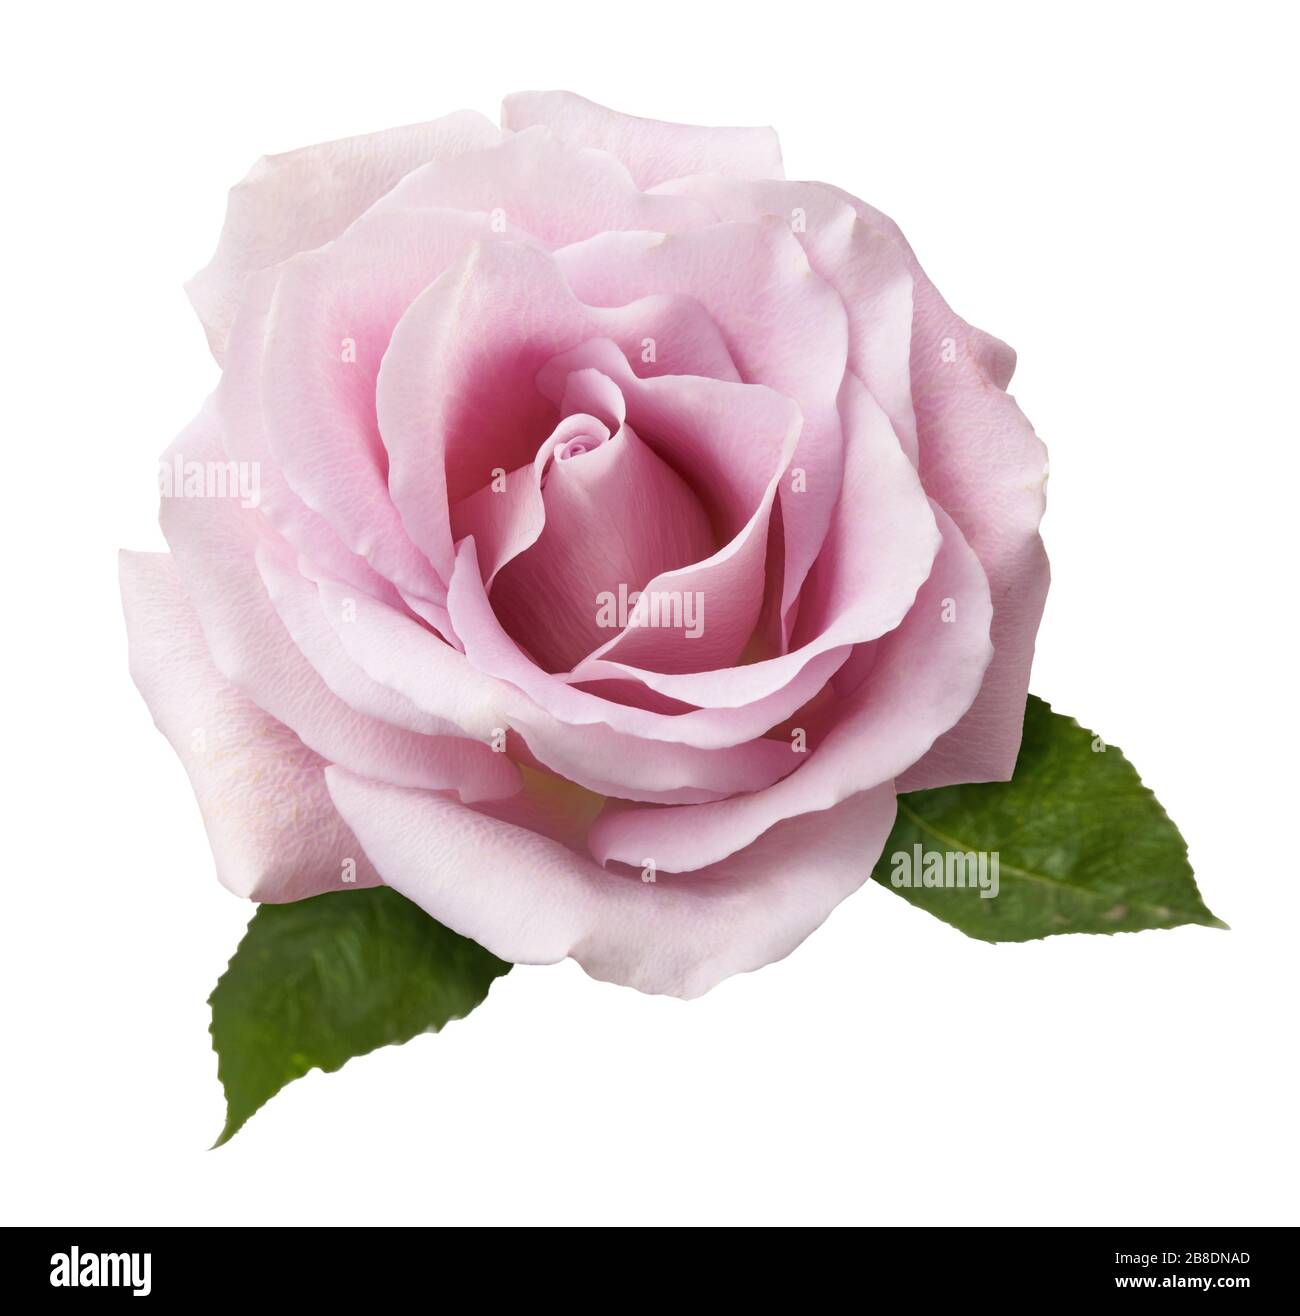 Schöne Rosenblüblume isoliert auf weißem Hintergrund. Rosa Blume mit zwei frischen Rosenblättern. Stockfoto